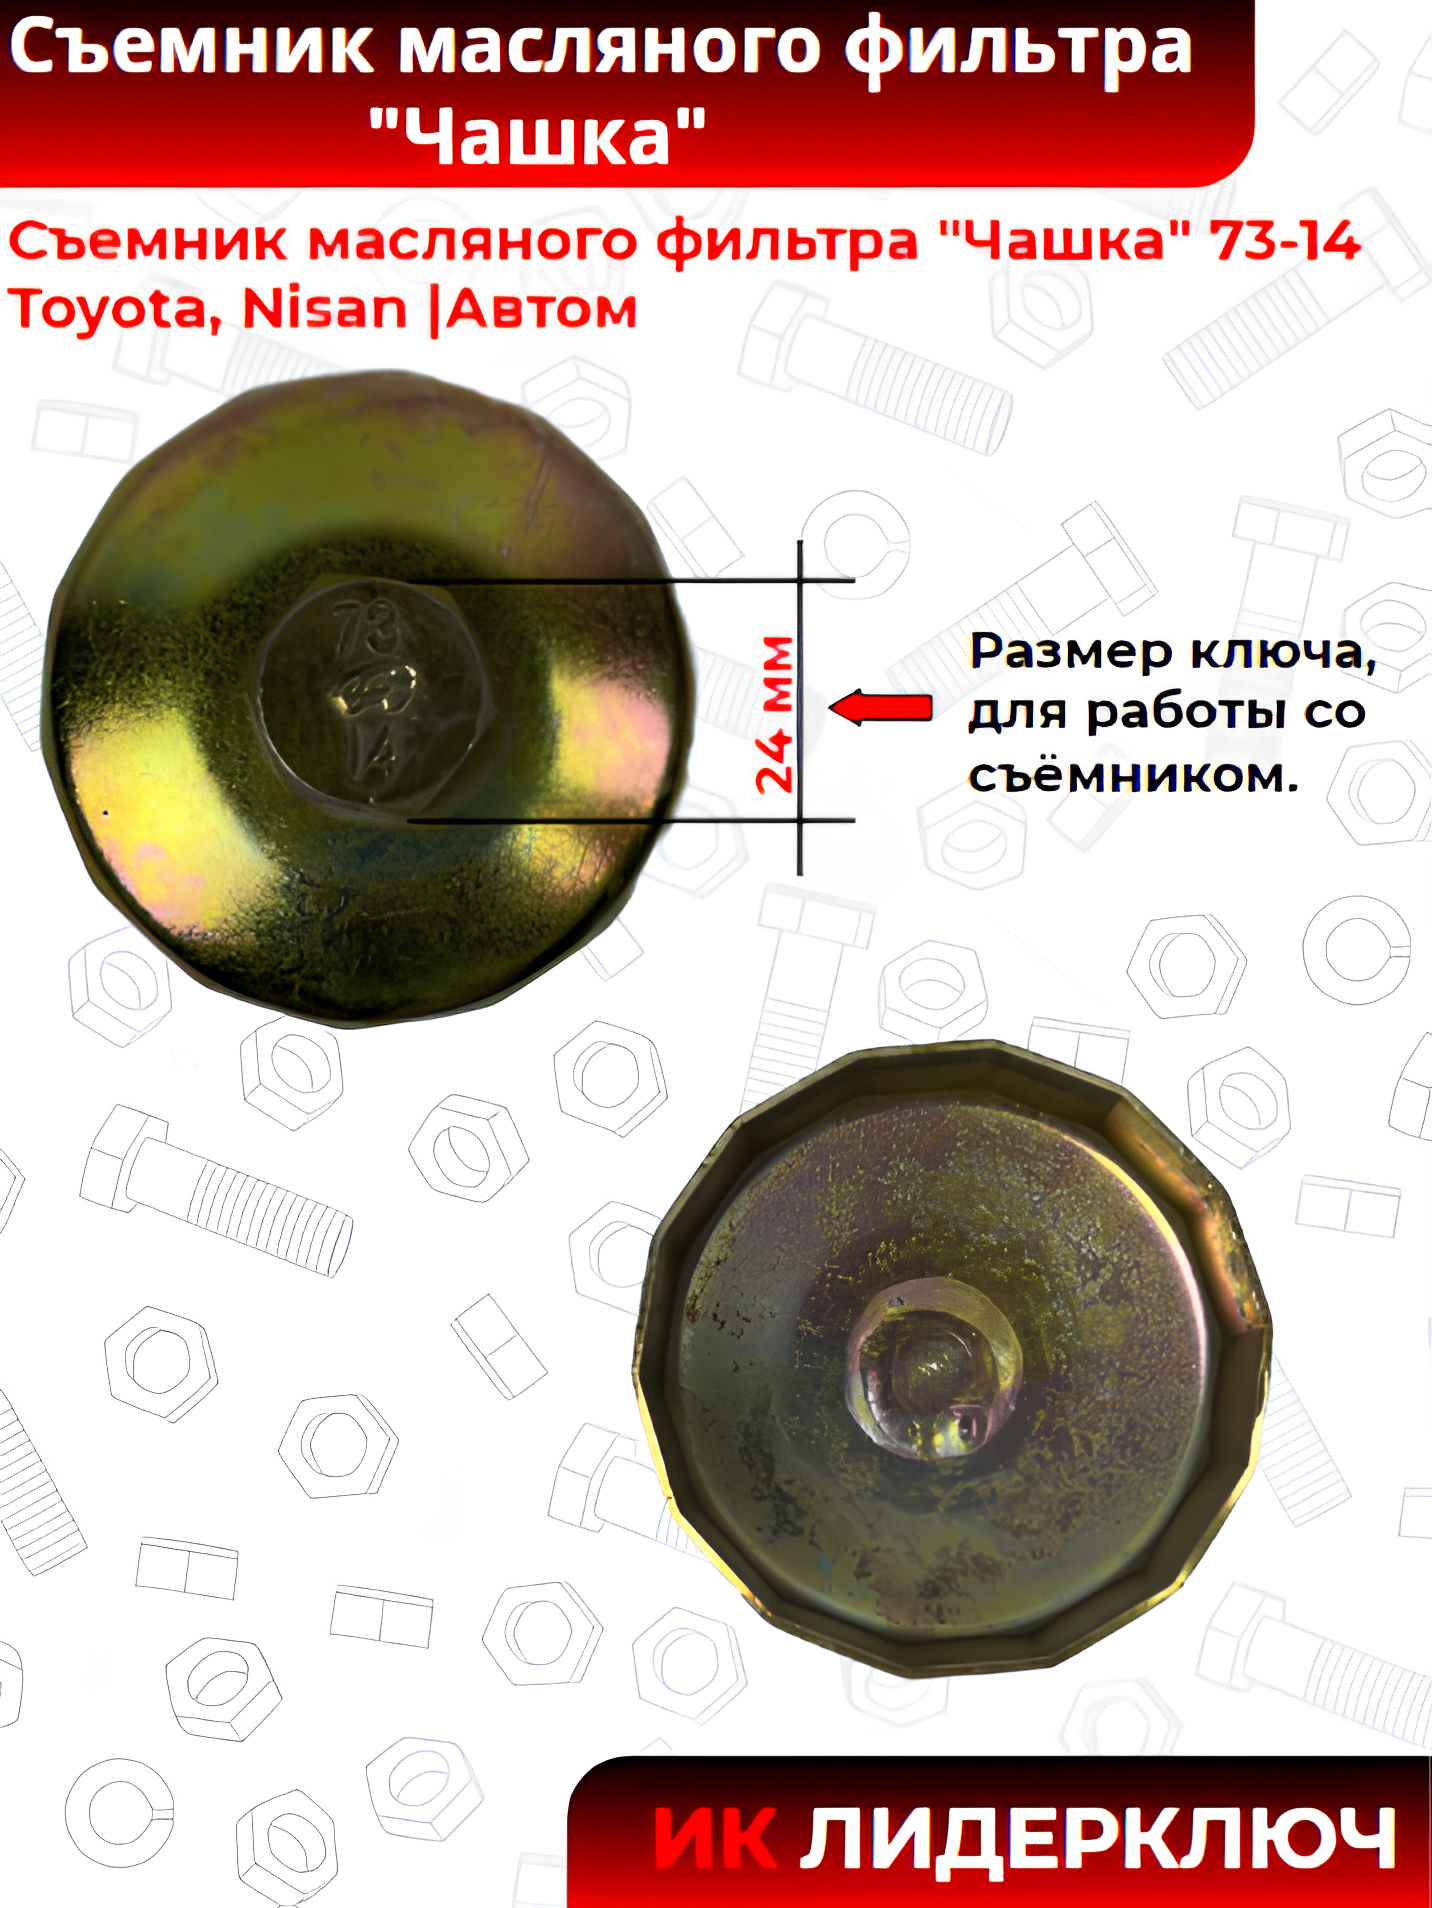 Съемник масляного фильтра "Чашка" 73-14 Toyota, Nisan |Автом